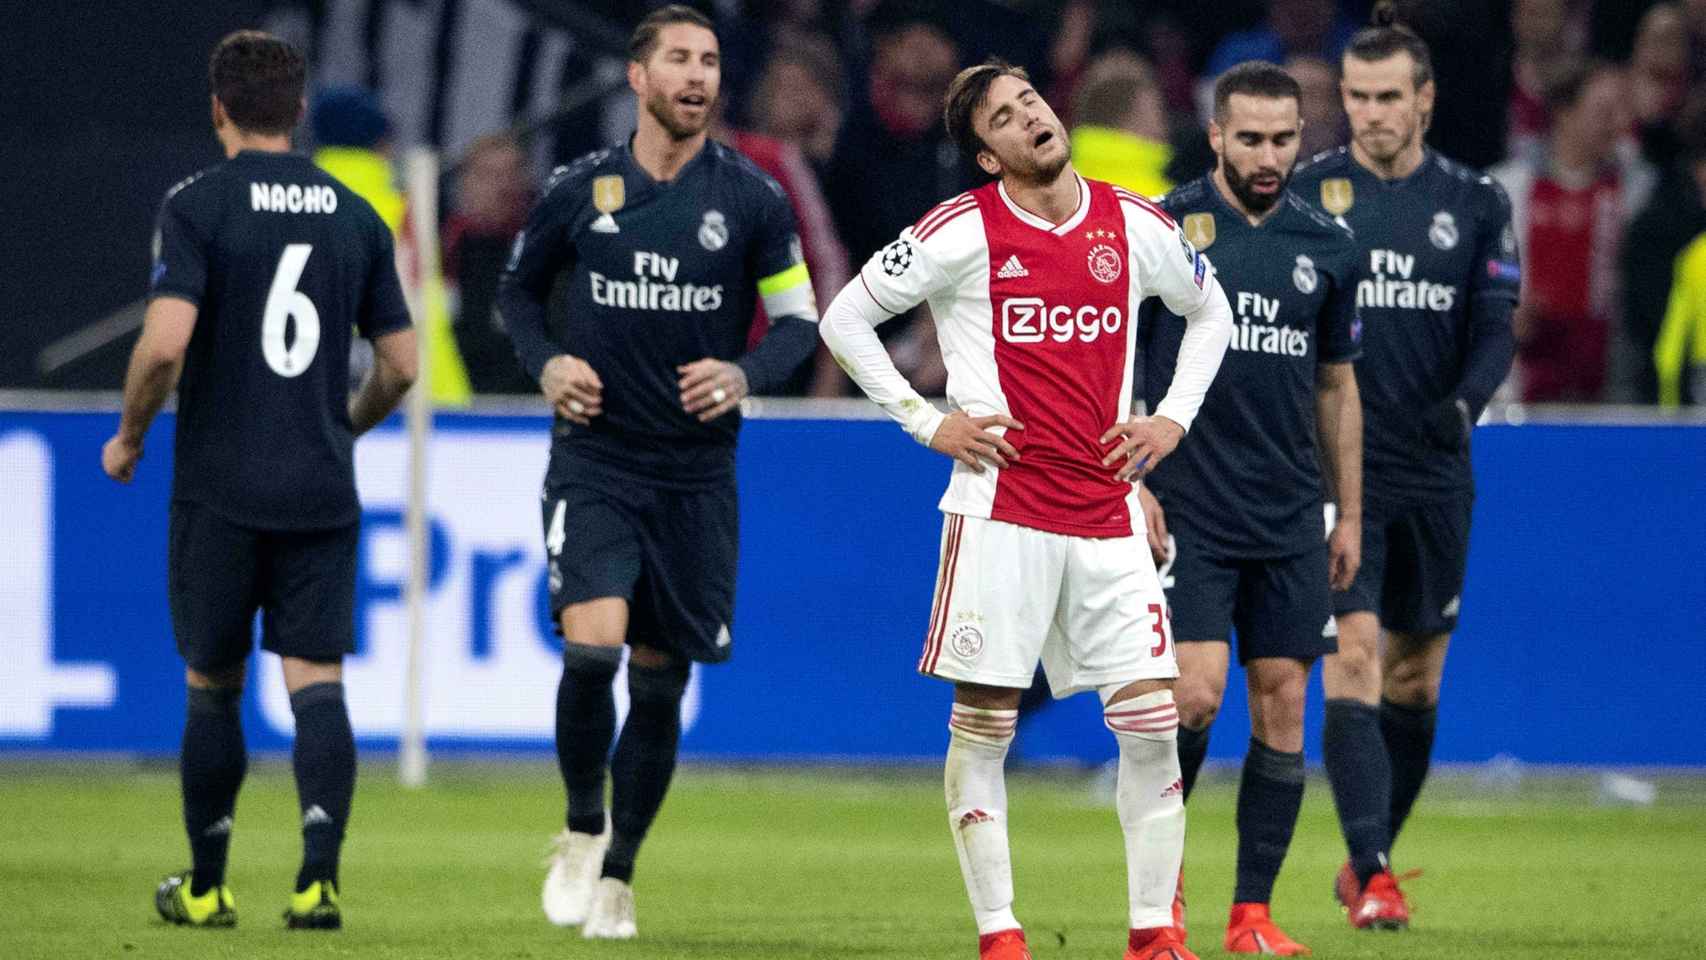 Ajax de Ámsterdam-Real Madrid, partido de ida octavos de final de Champions League.